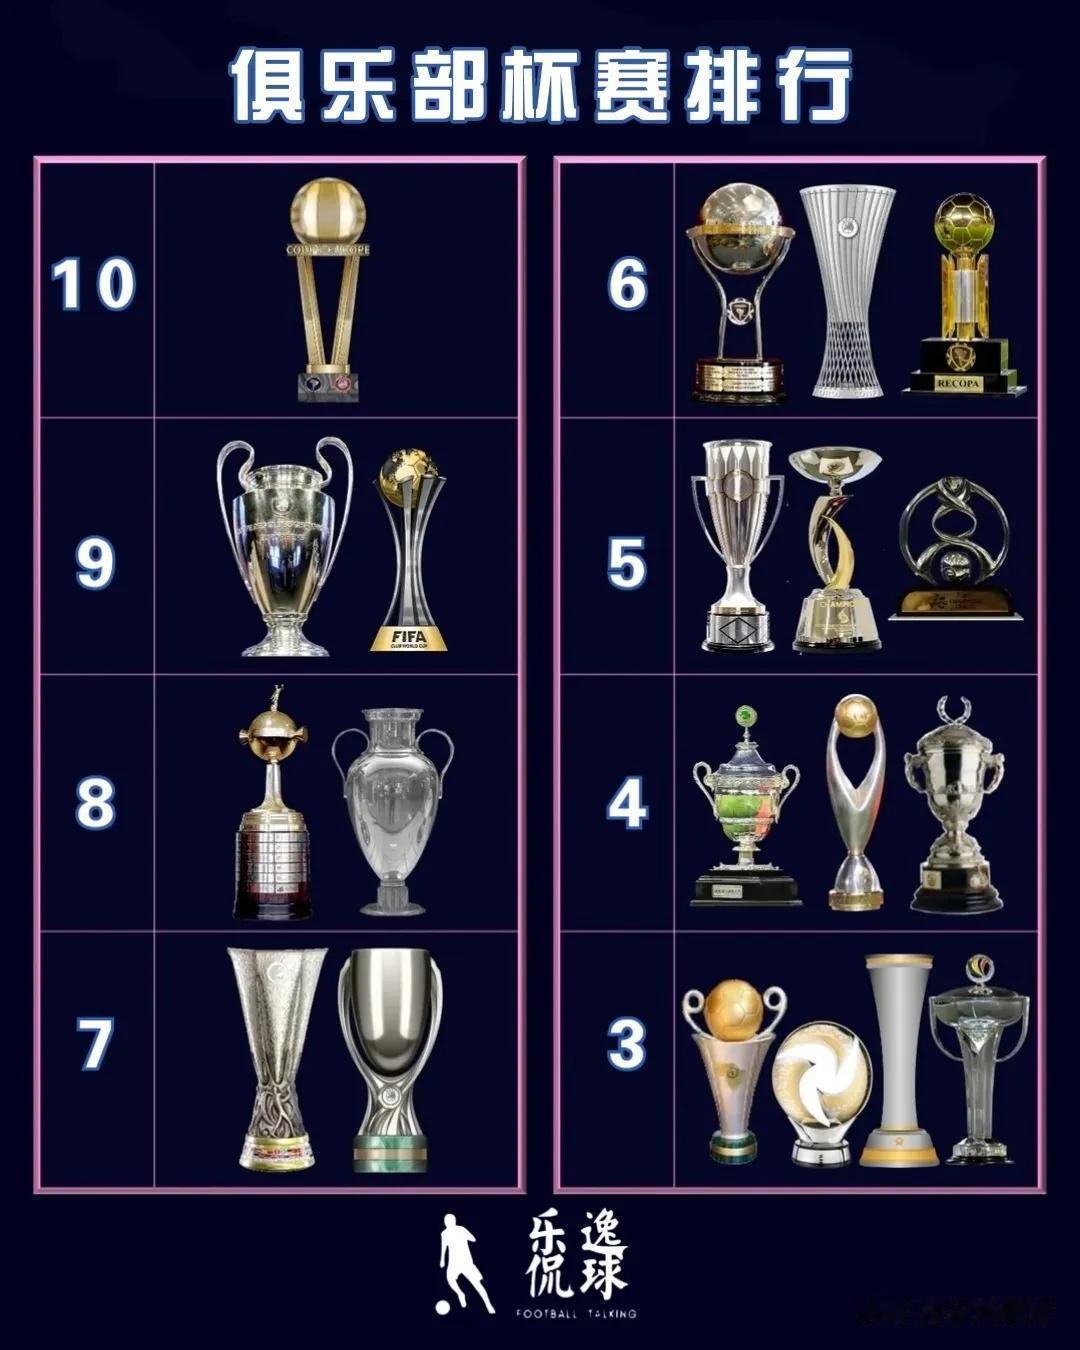 俱乐部杯赛有很多，比如洲际杯、世俱杯、欧冠、解放者杯、亚冠、非冠等等。假如根据杯